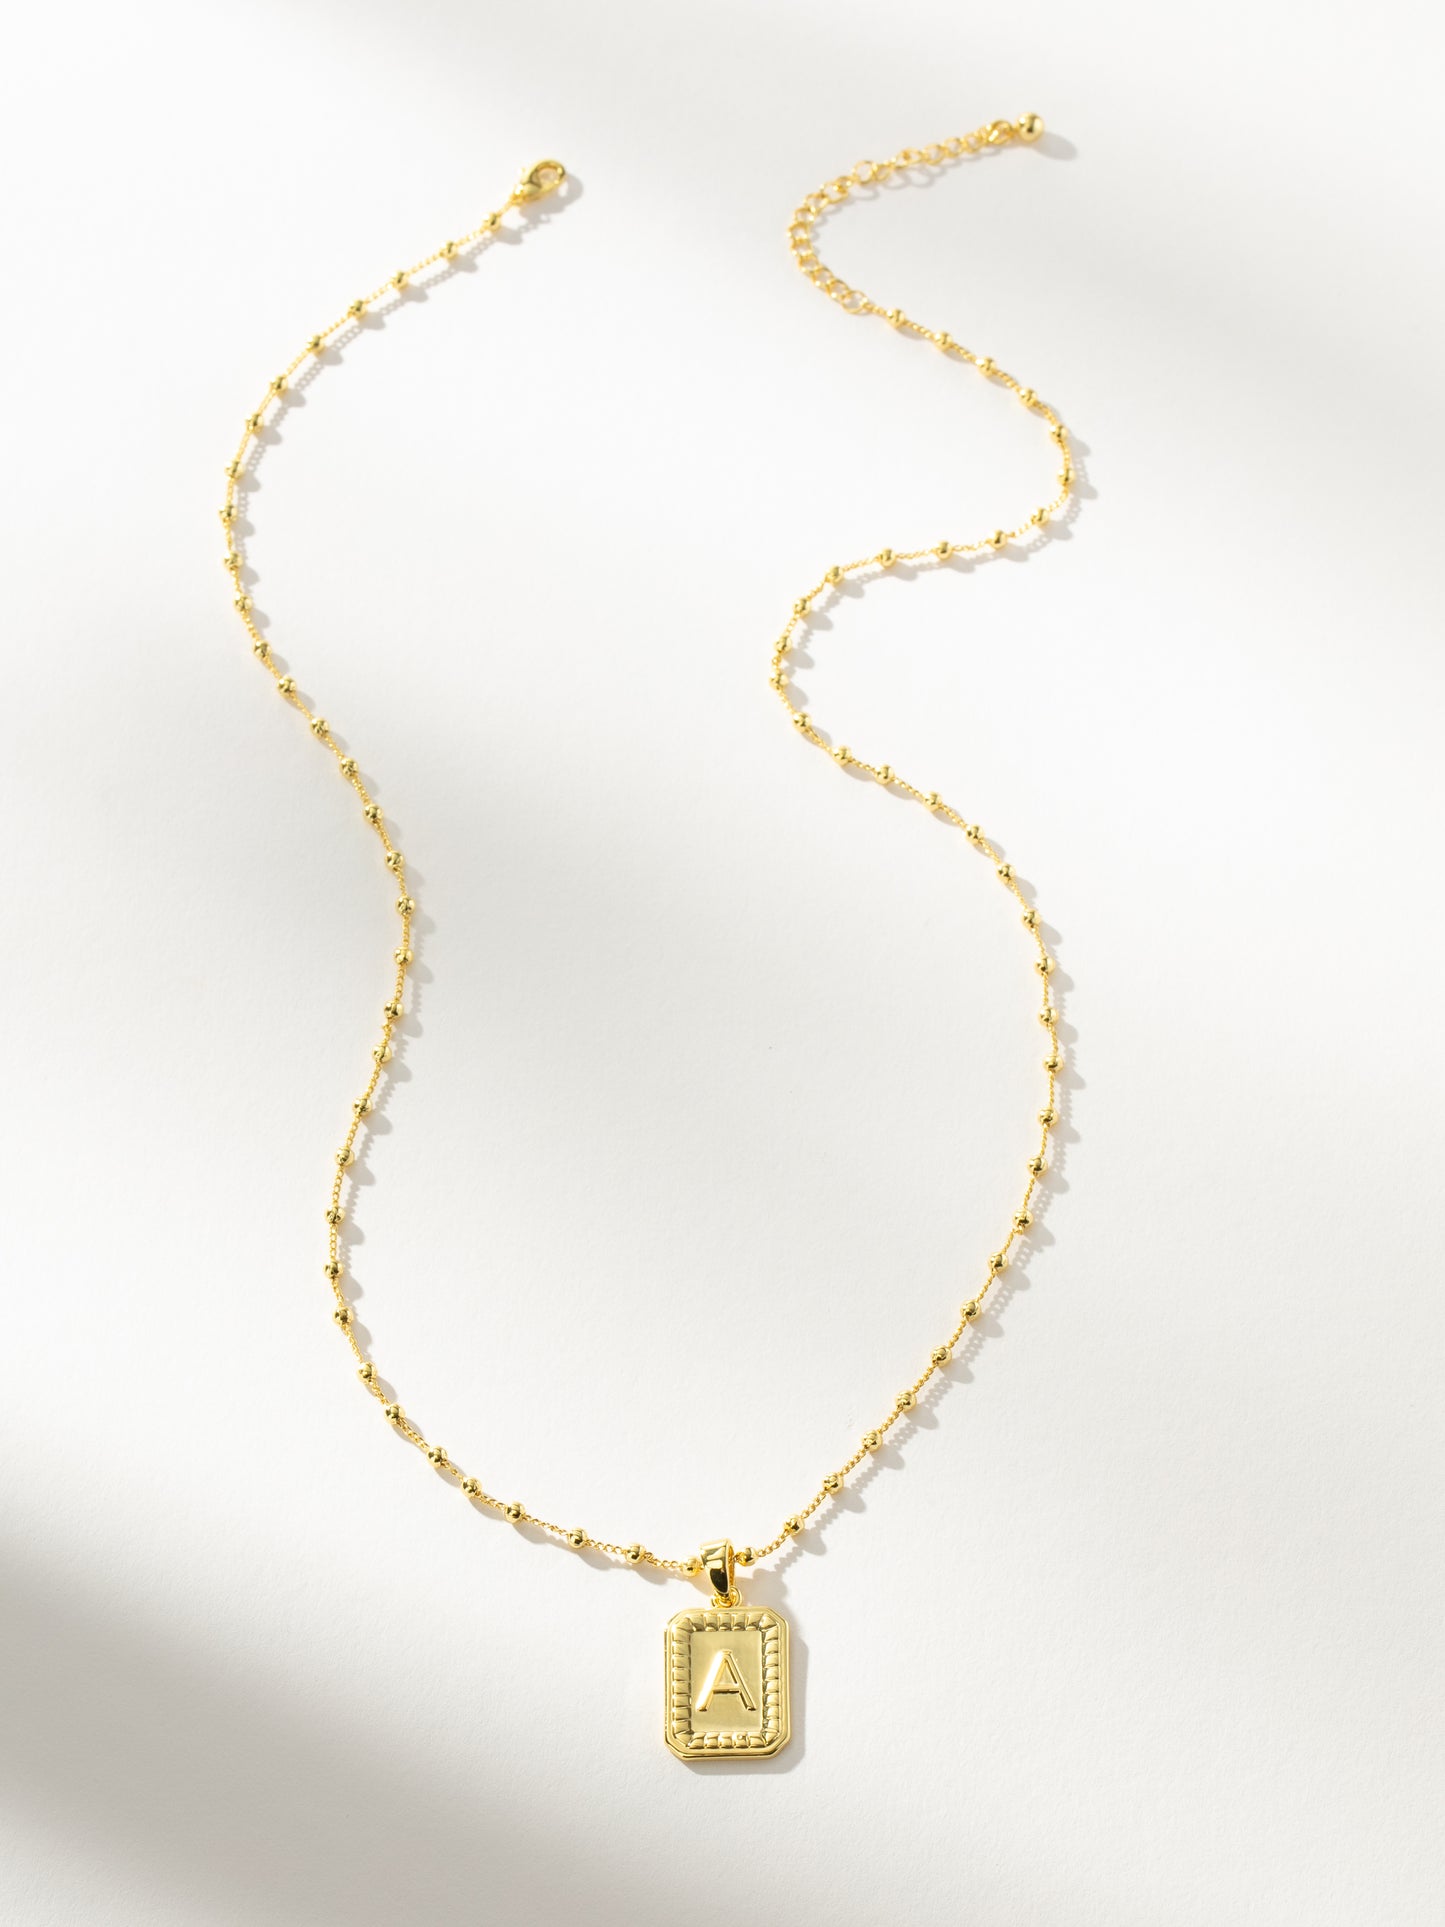 Sur Necklace | Gold | Product Image | Uncommon James